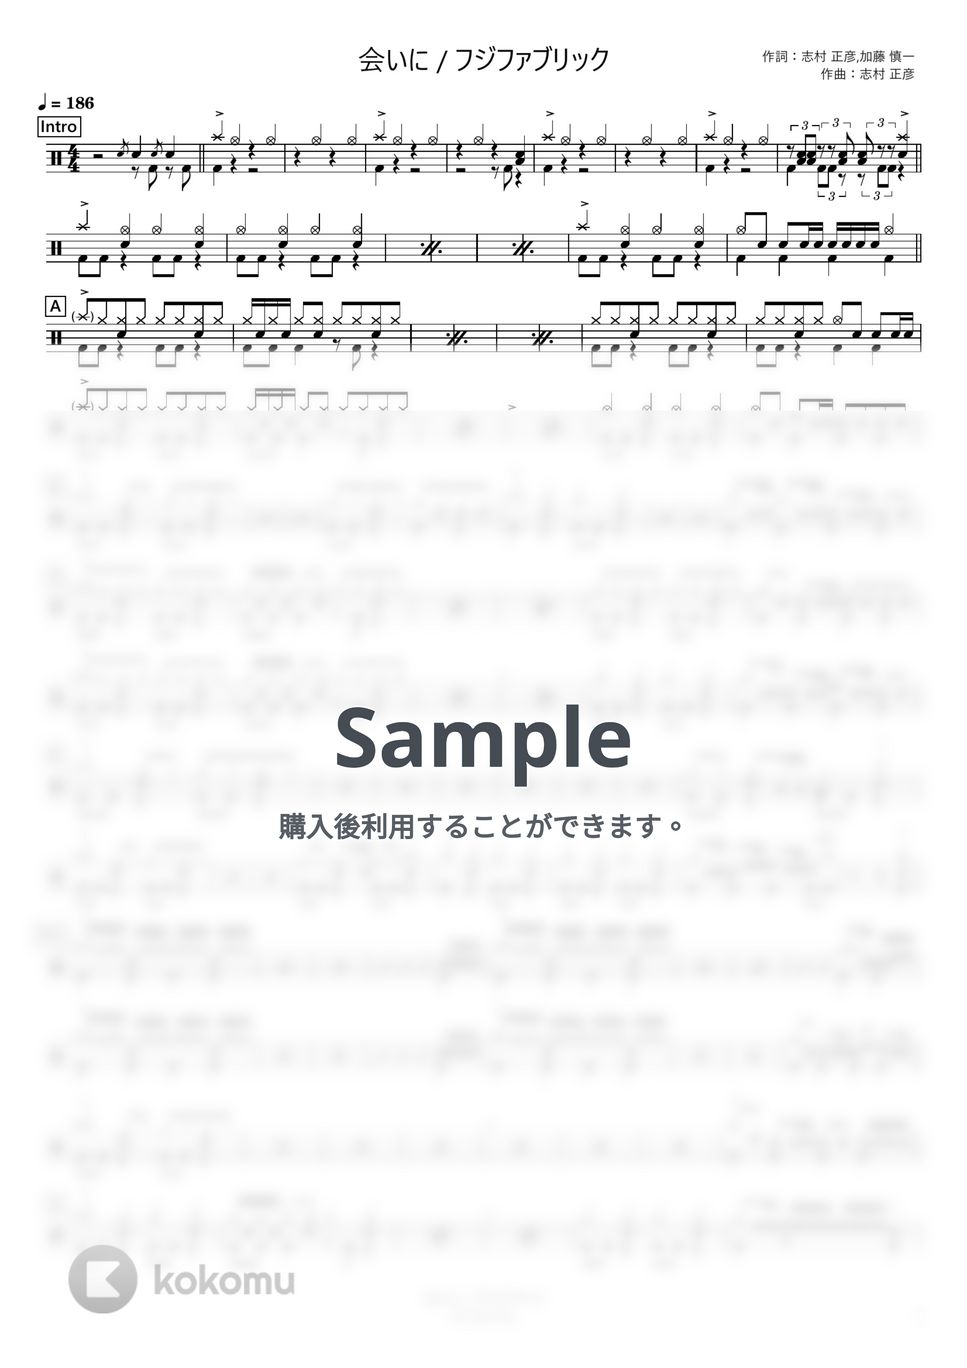 フジファブリック - 会いに (コンパクト) by さくっとドラム